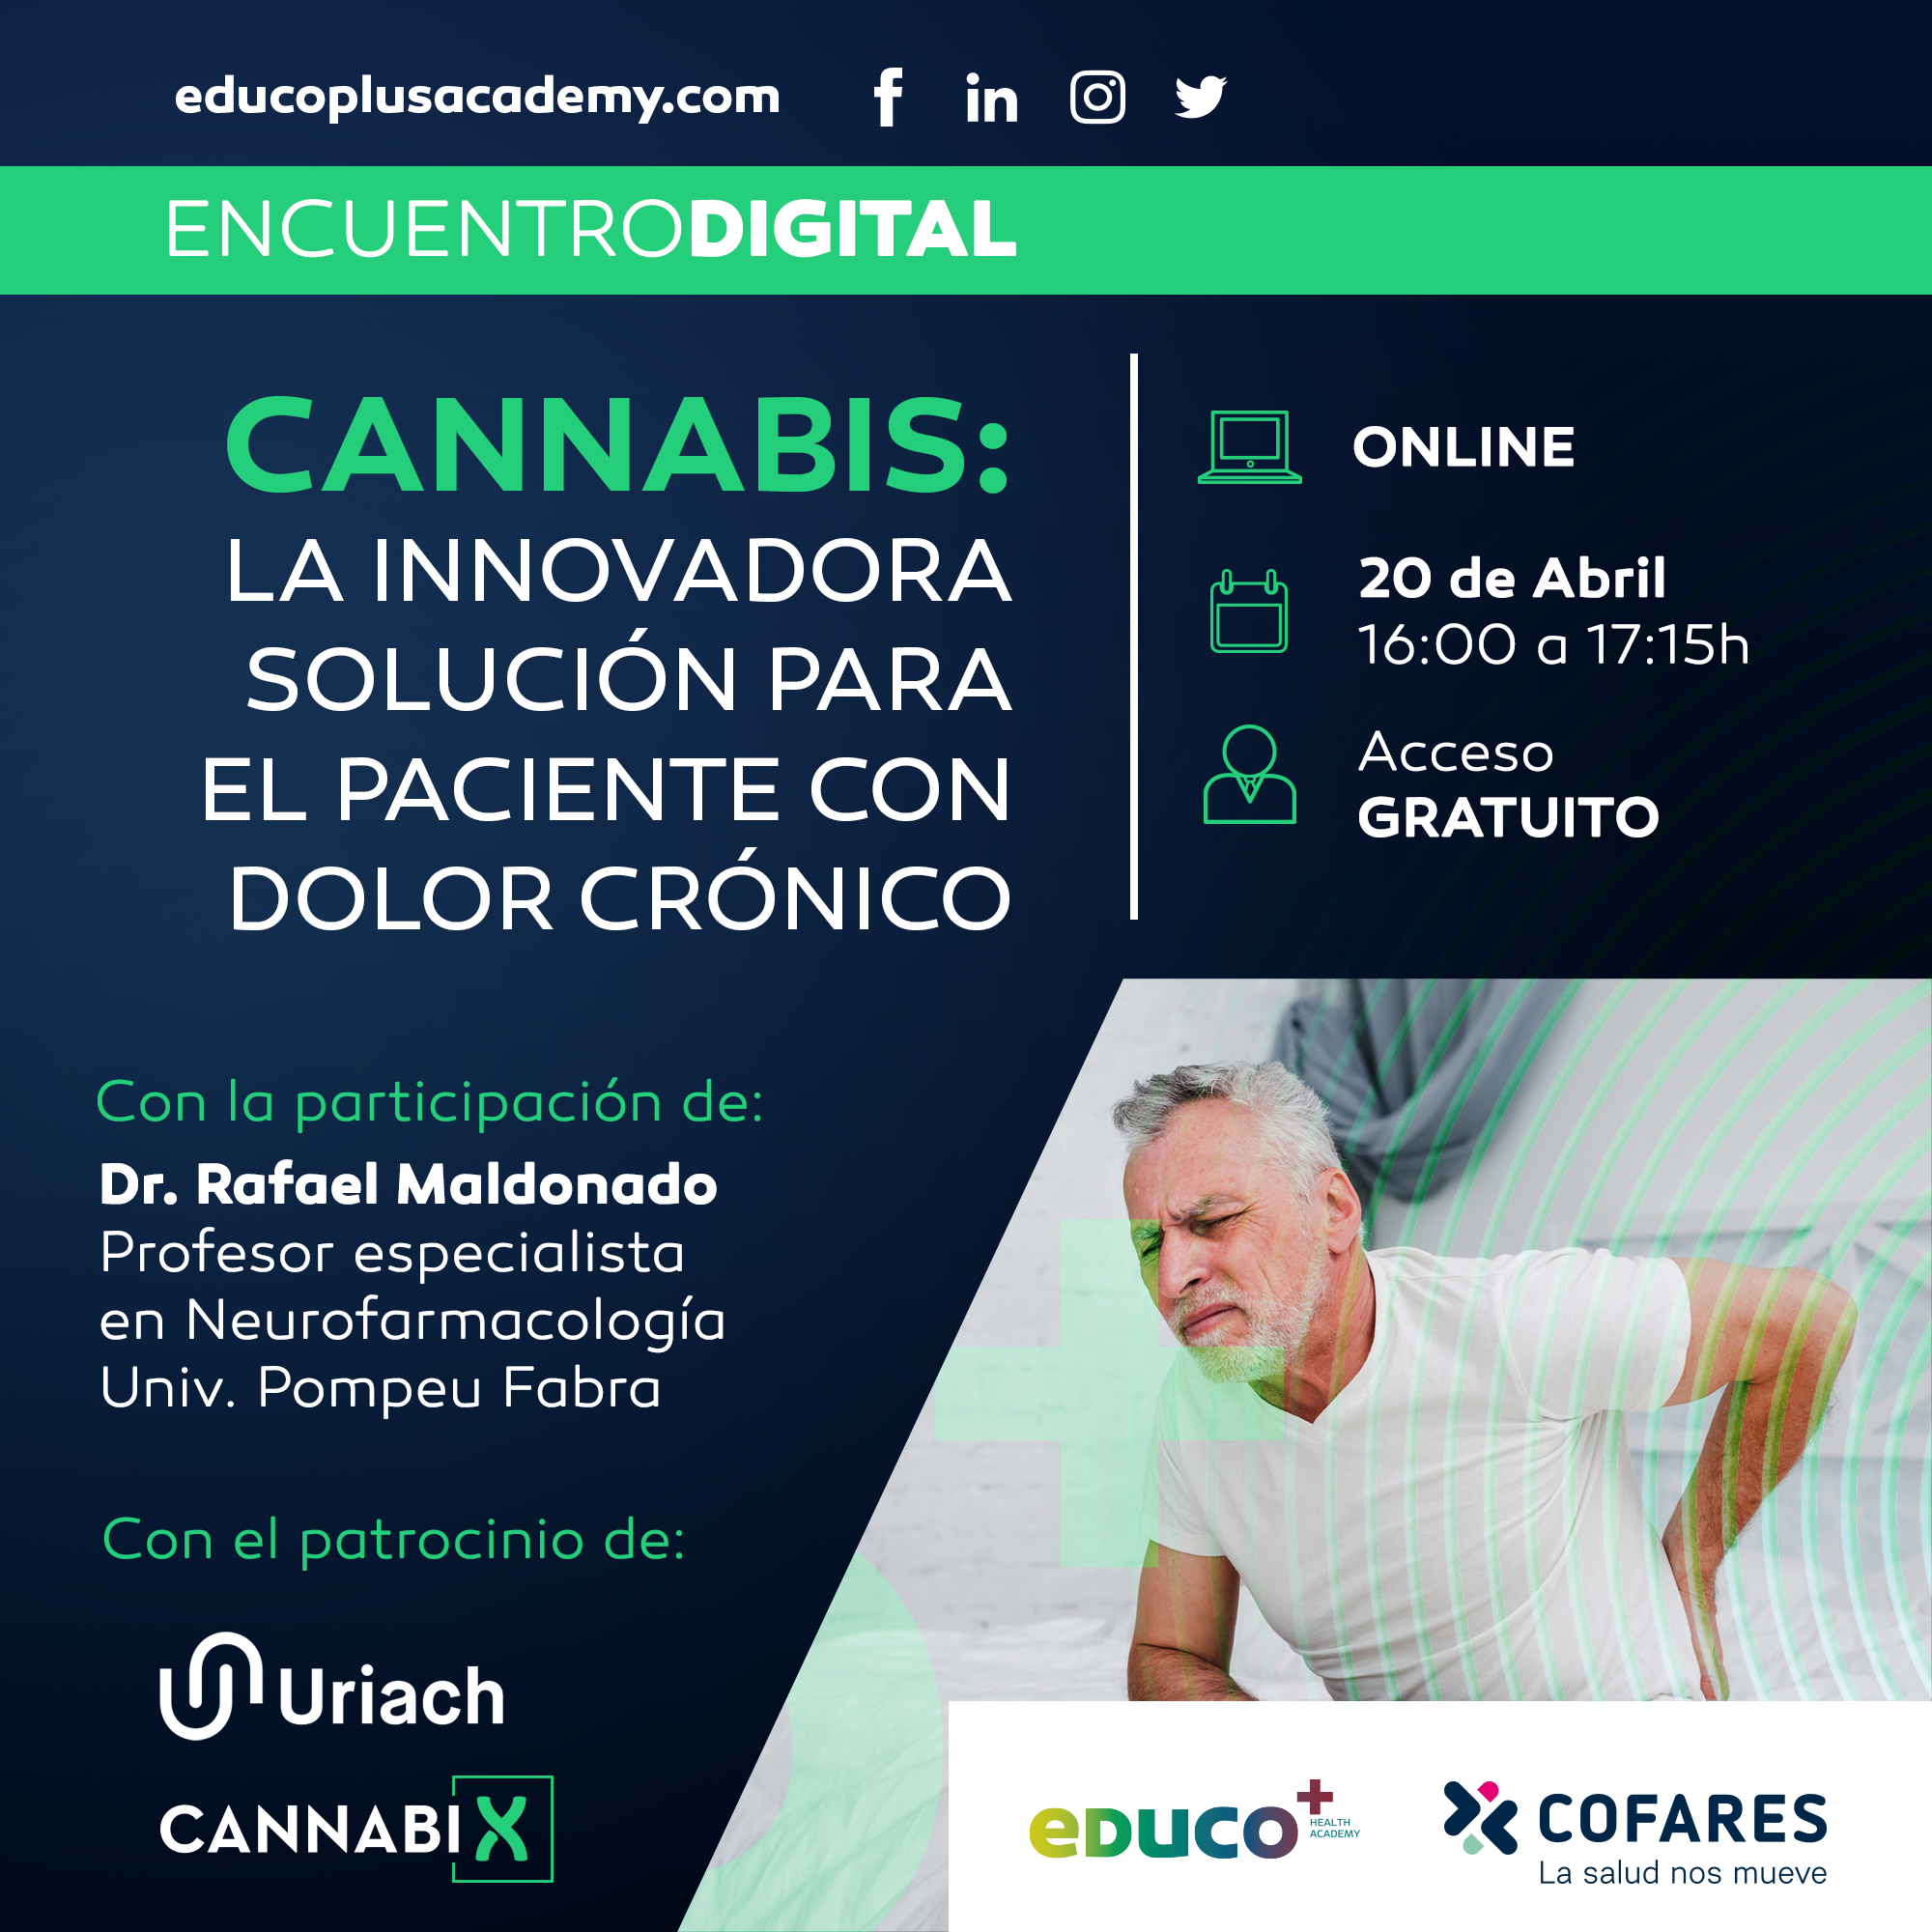 CANNABIX 20 Abril Whats Insta 1 1 - eDUCO+ organiza el encuentro 'Cannabis: La innovadora solución para el paciente con dolor crónico'